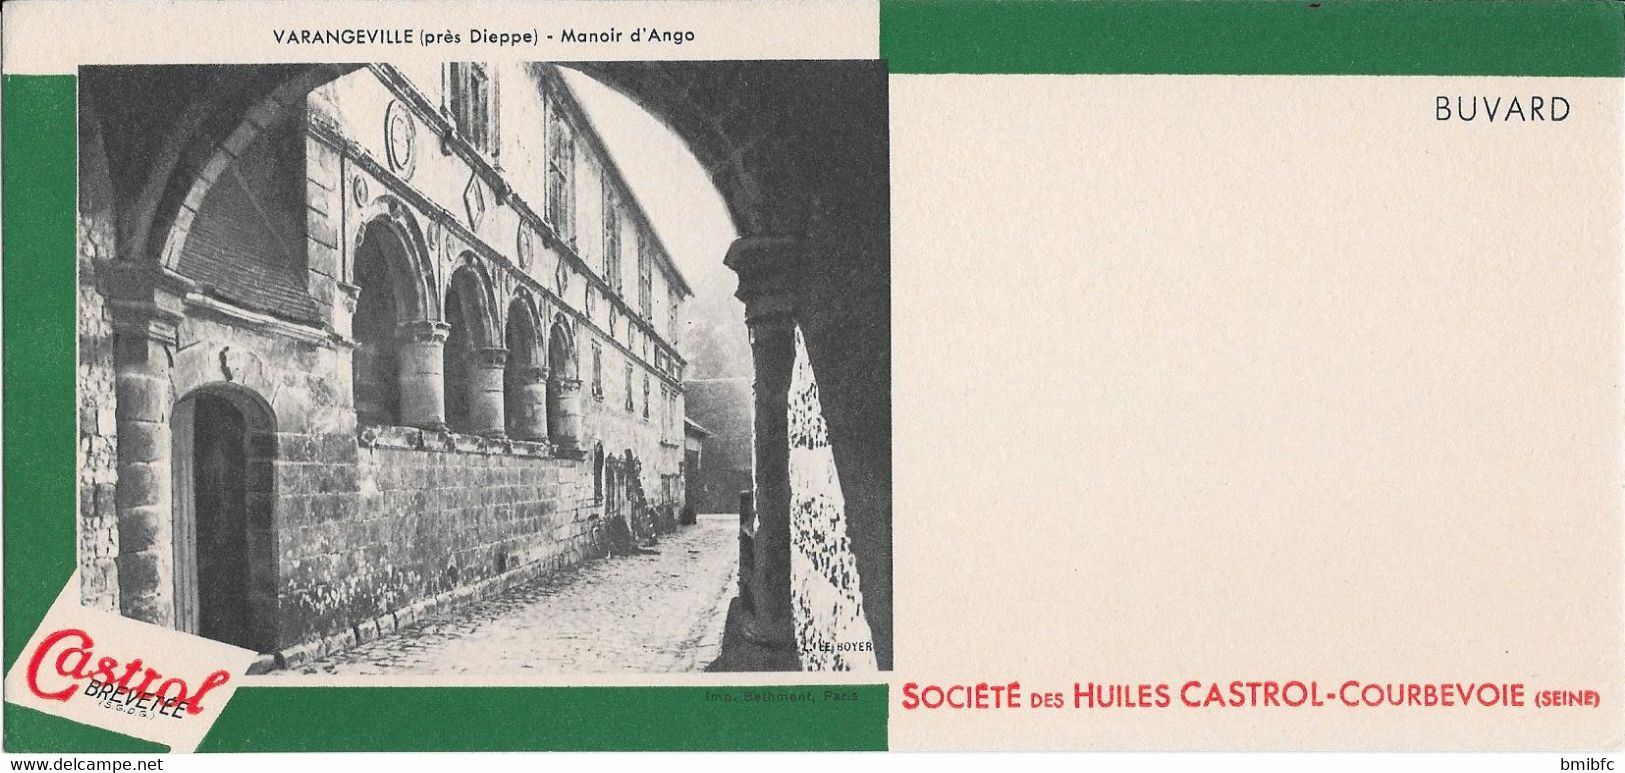 *** Buvard Société Des Huiles CASTROL-COURBEVOIE (Seine) Cliché VARANGEVILLE Près Dieppe - Manoir D'Ango - Gas, Garage, Oil